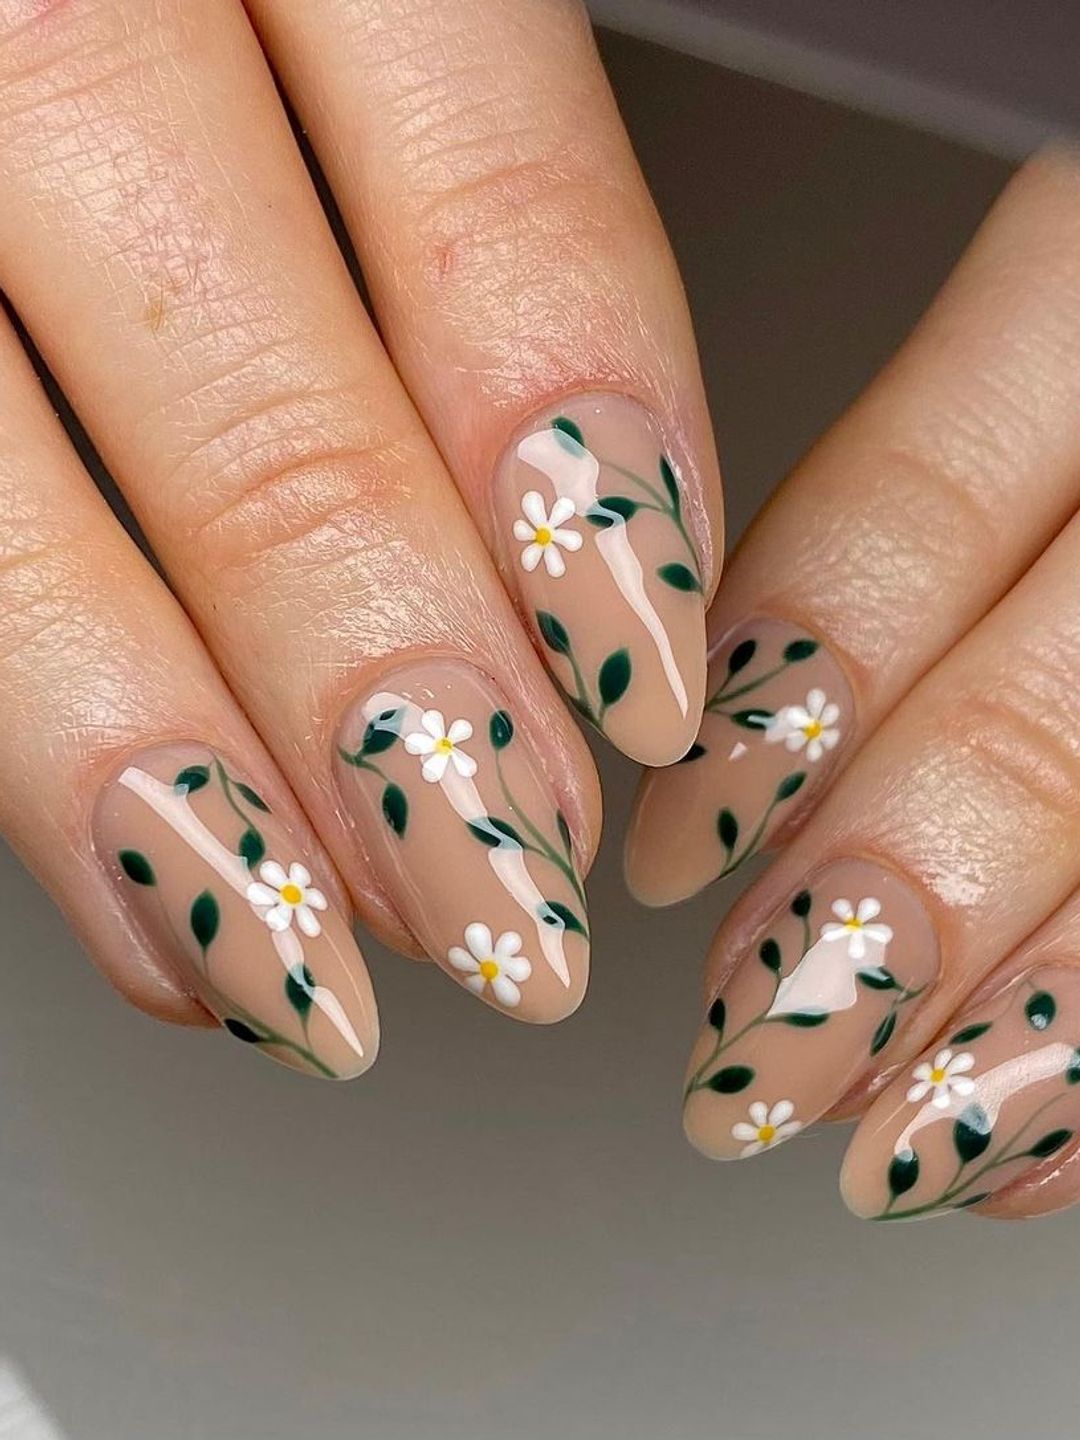 Daisy nails 